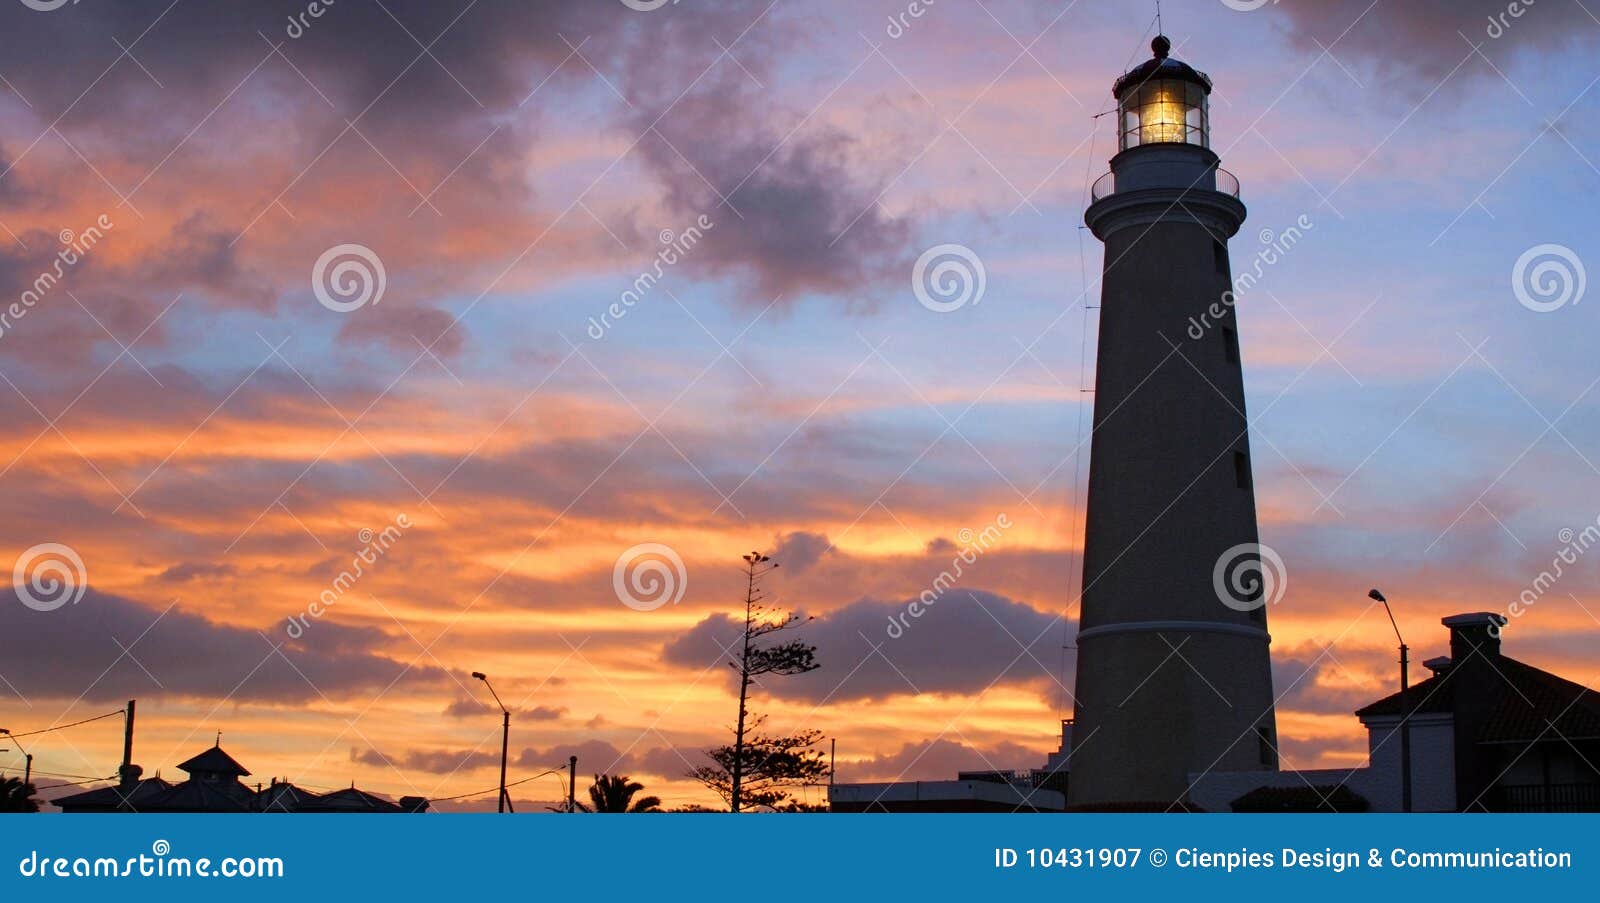 lighthouse at dusk. punta del este, uruguay.